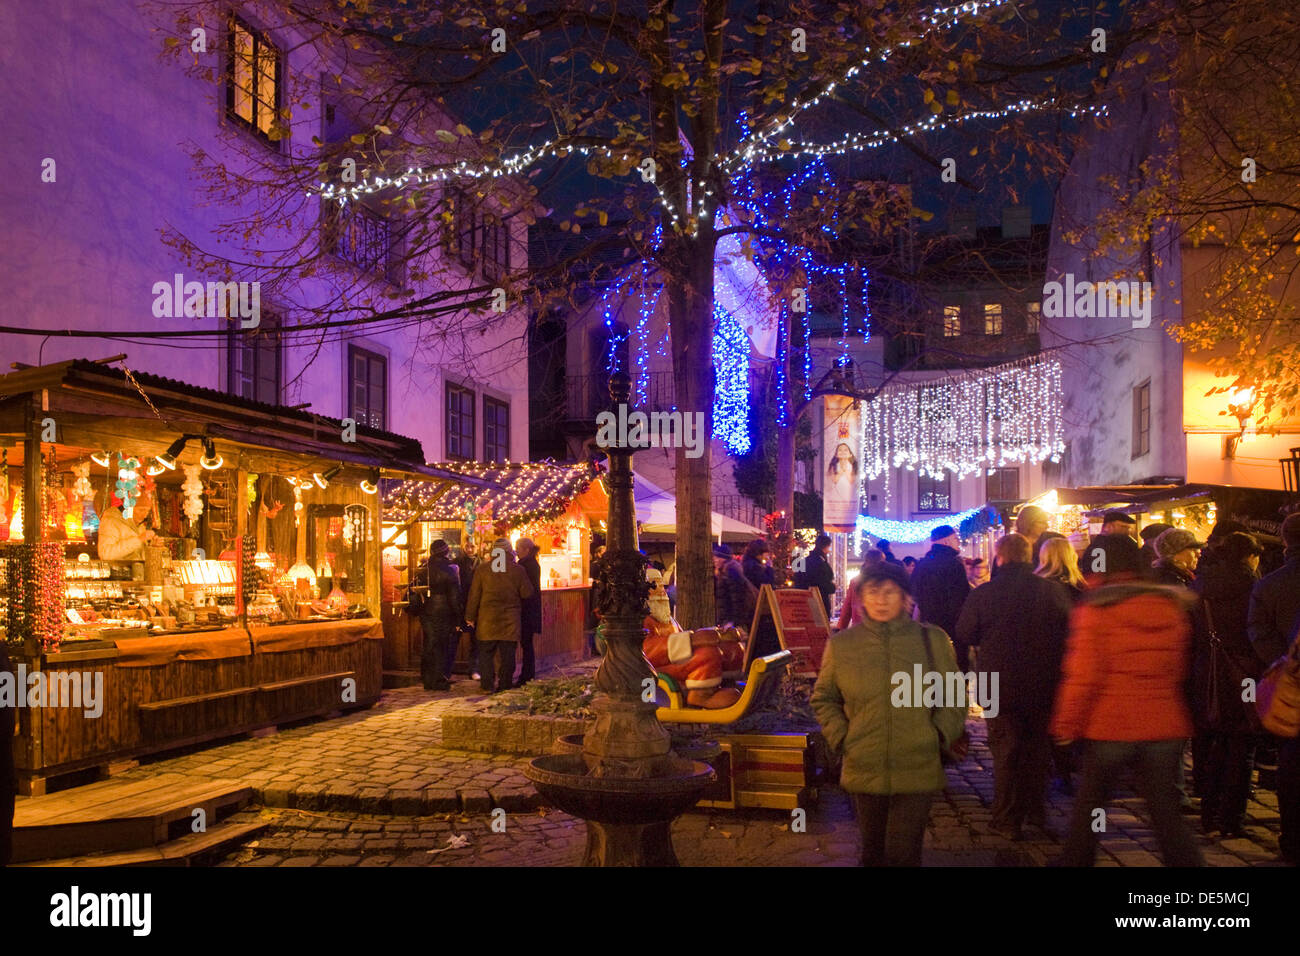 Österreich, Wien 7, Spittelberg, der traditionelle Spittelberger Weihnachtsmarkt bietet Kunsthandwerk zum Schauen und Kaufen. Stock Photo